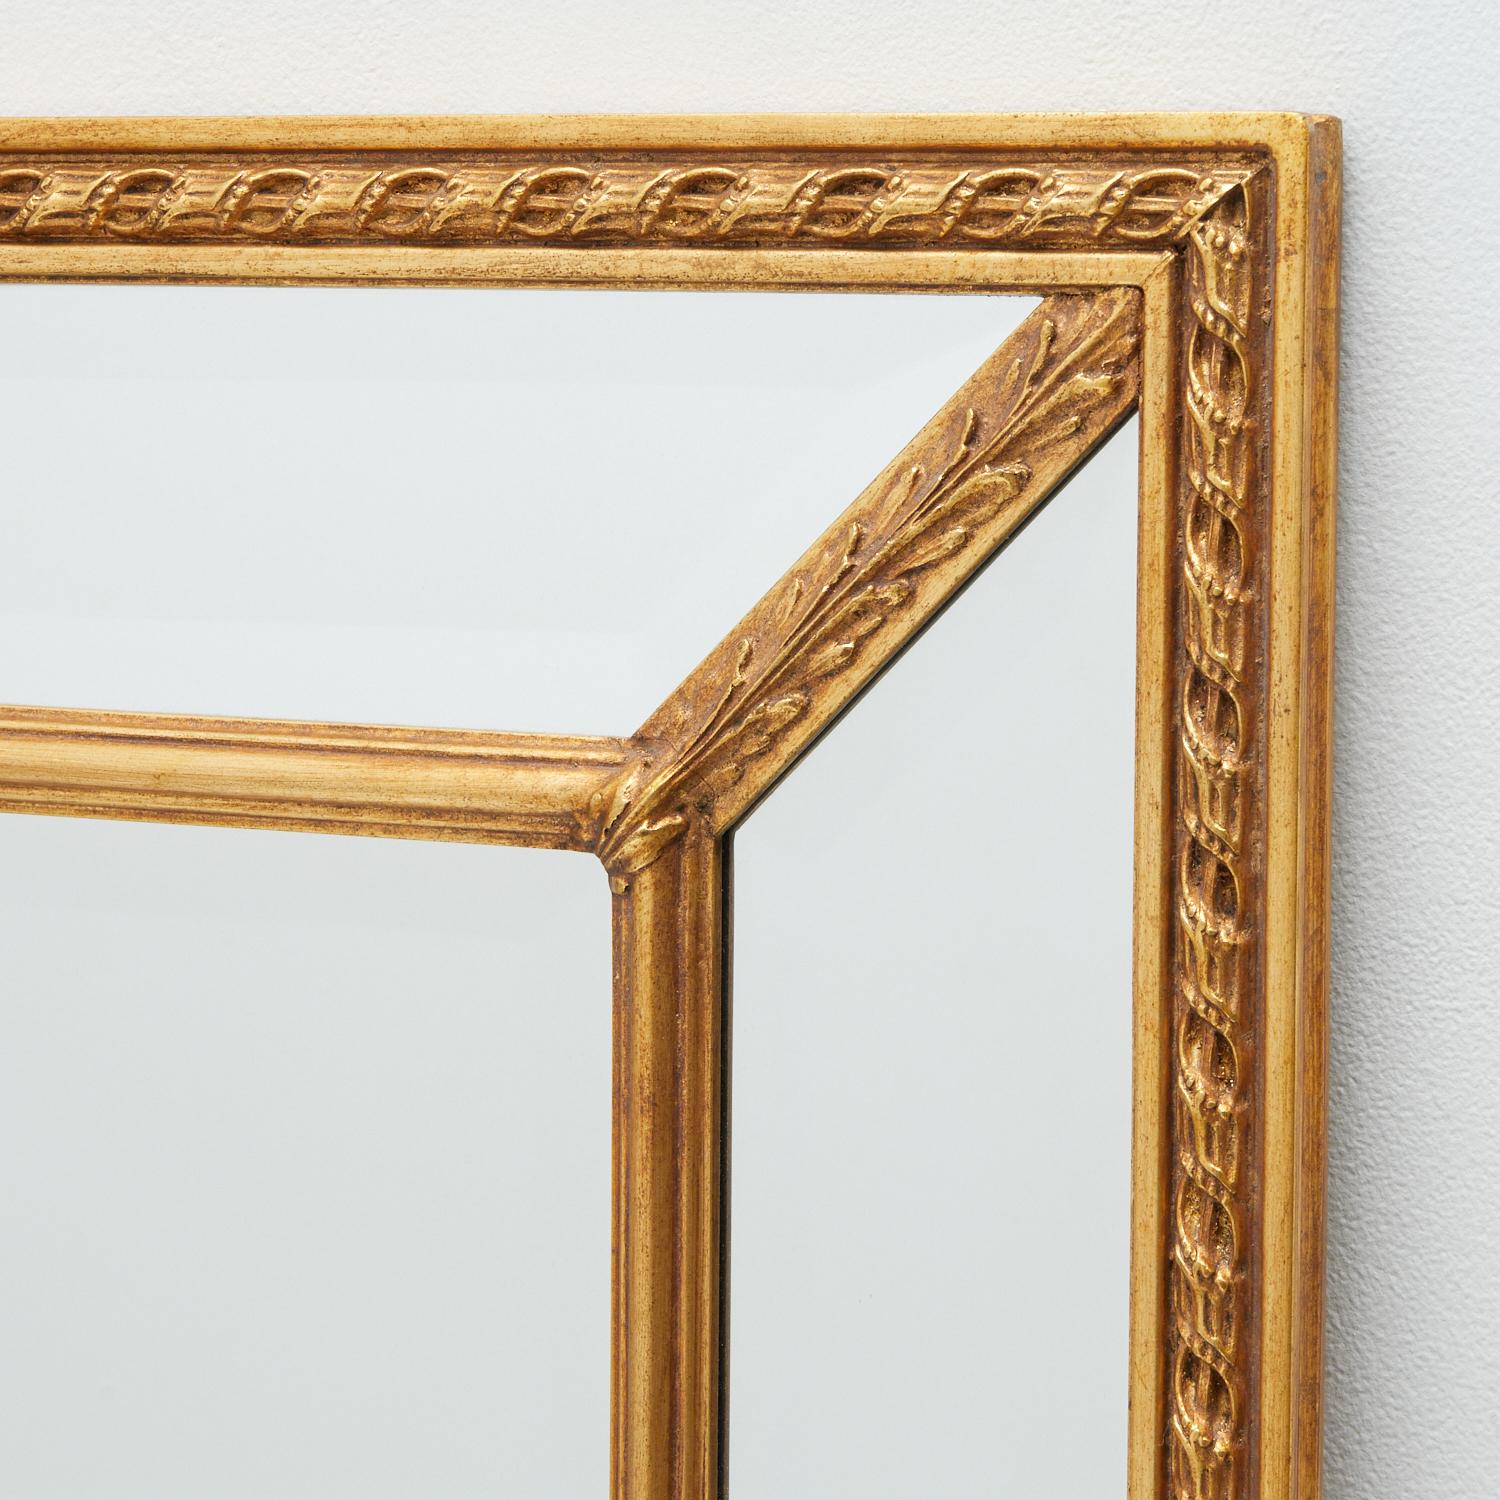 Spätes 20. Jh., American Carvers' Guild Spiegelstil #1204. Dieser doppelte Rahmen, gekämmt und verbunden durch Akanthusbünde, bildet ein auffälliges lineares Muster. Abgeschrägte und abgeschrägte Seitenteile, ein abgeschrägter Mittelteil und eine